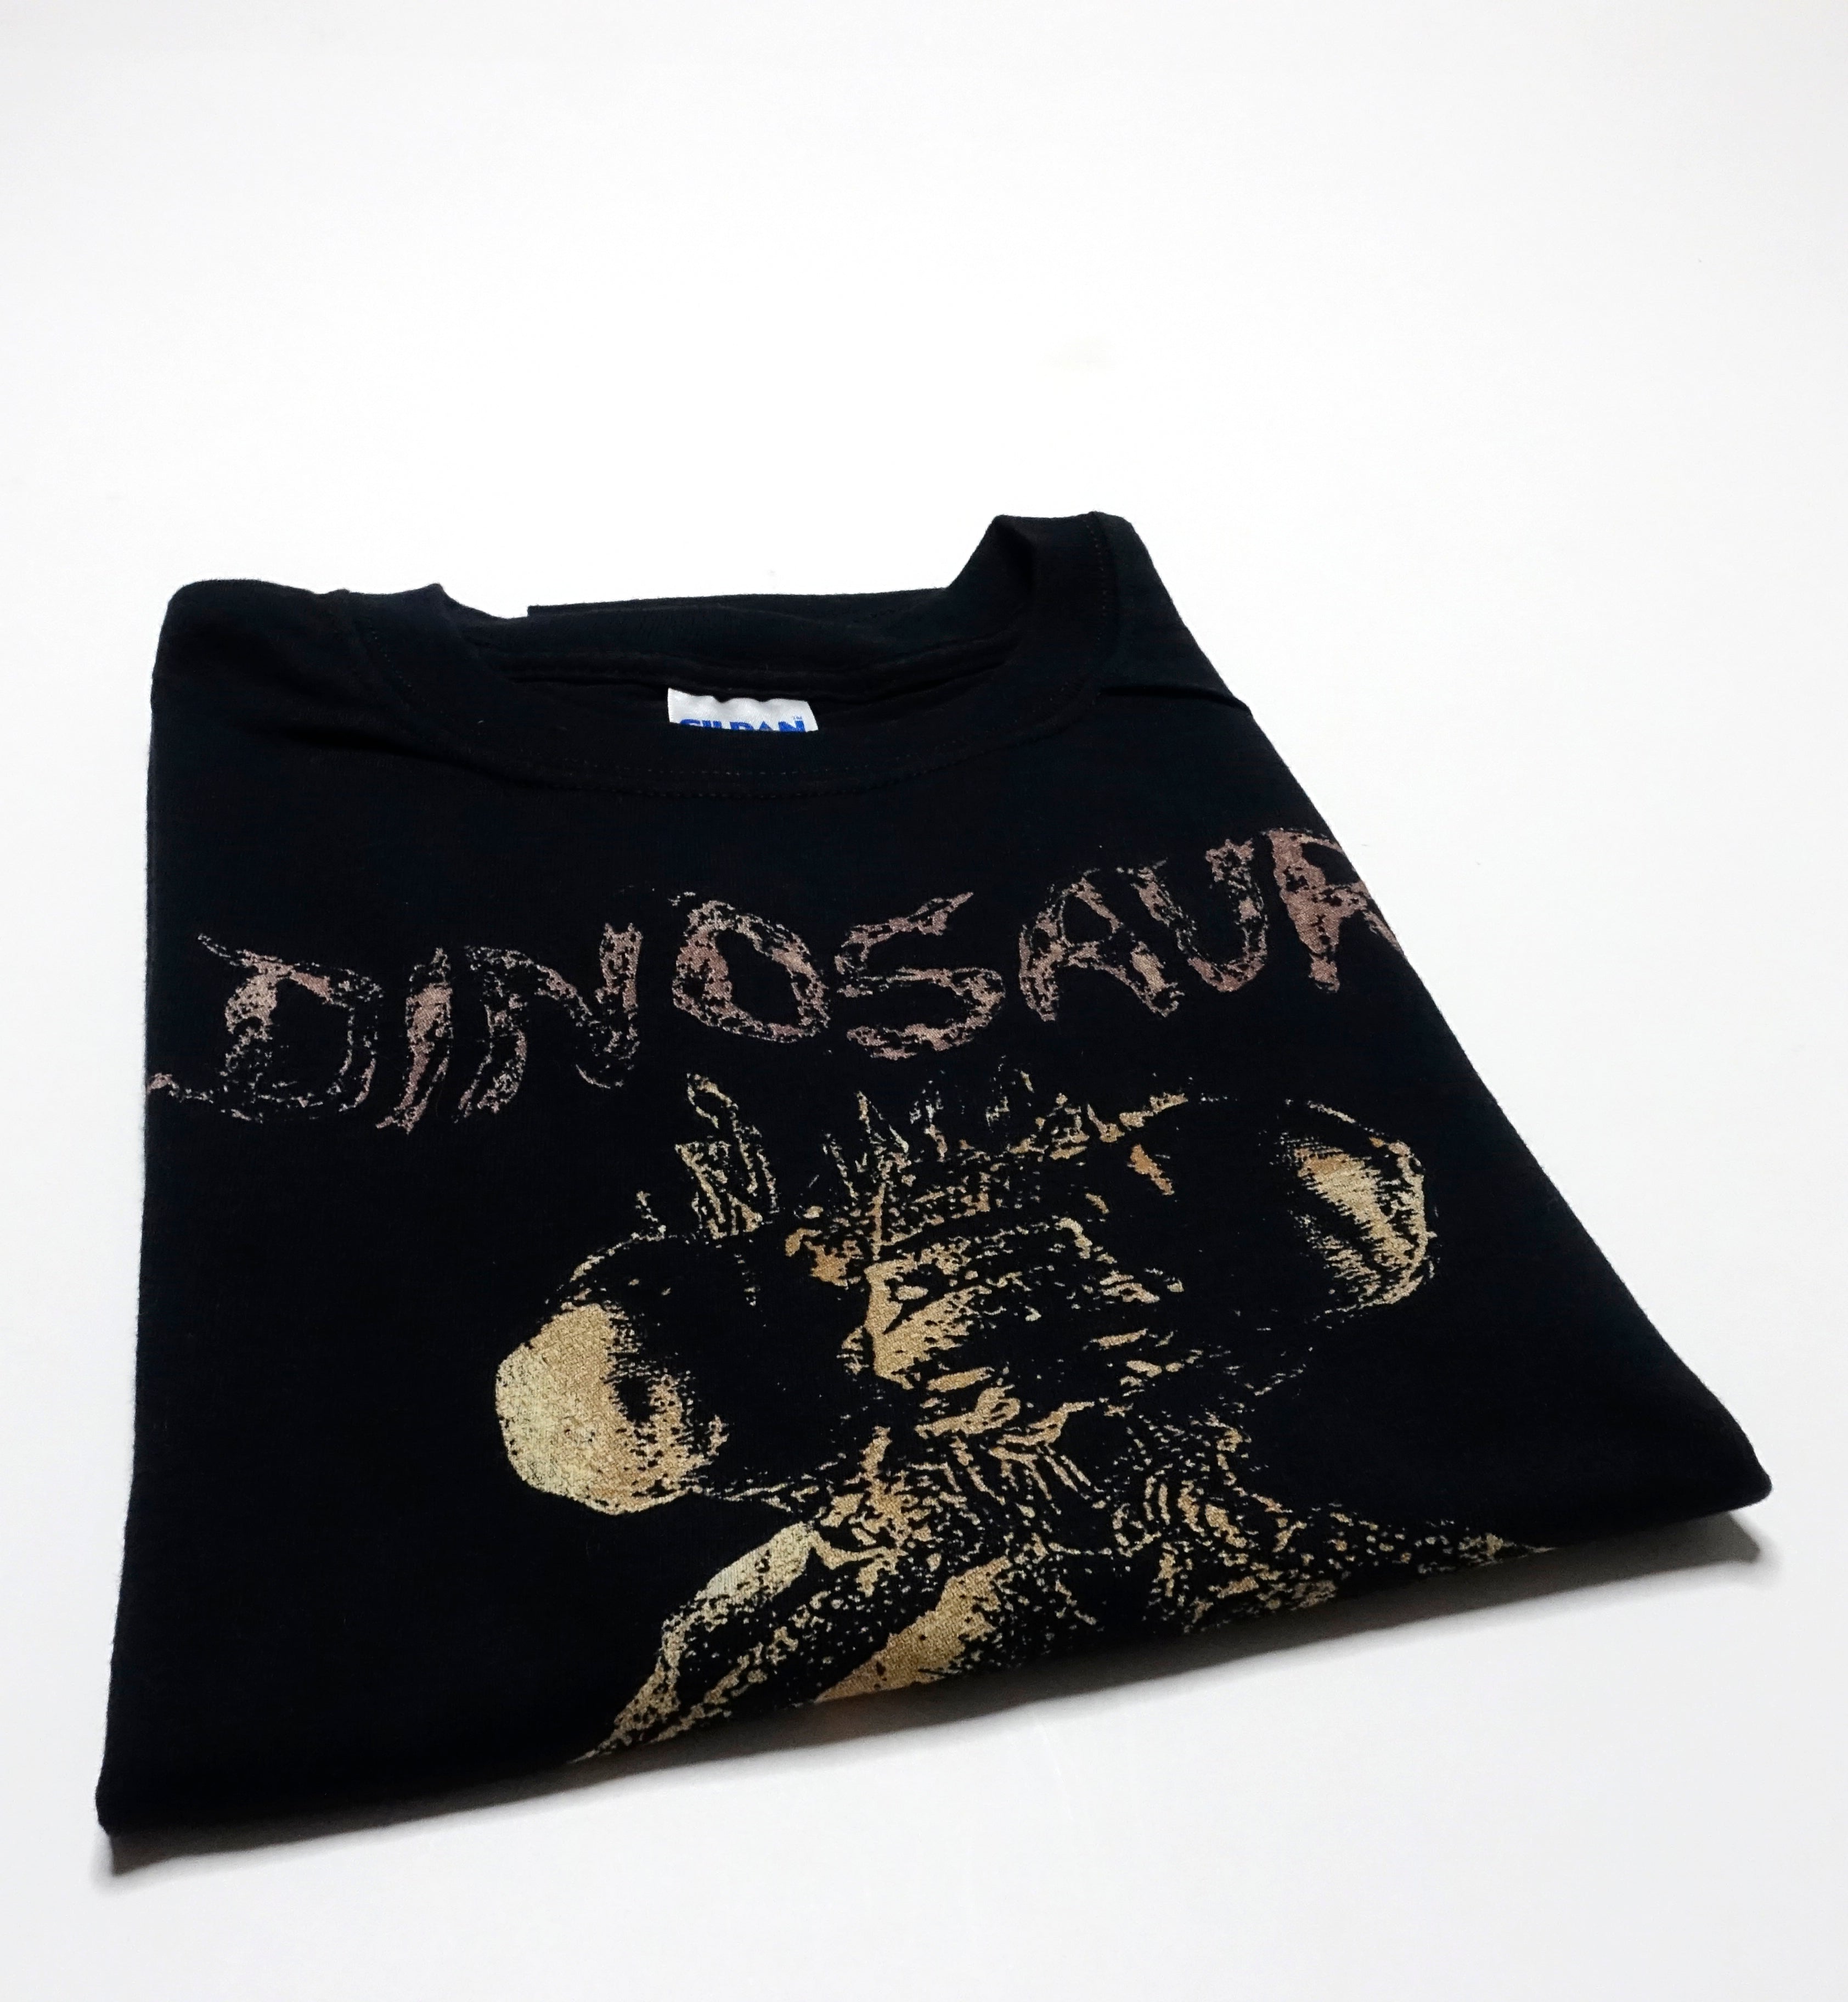 Dinosaur Jr.  ‎–  Bug Anniversary Tour Shirt Size Large